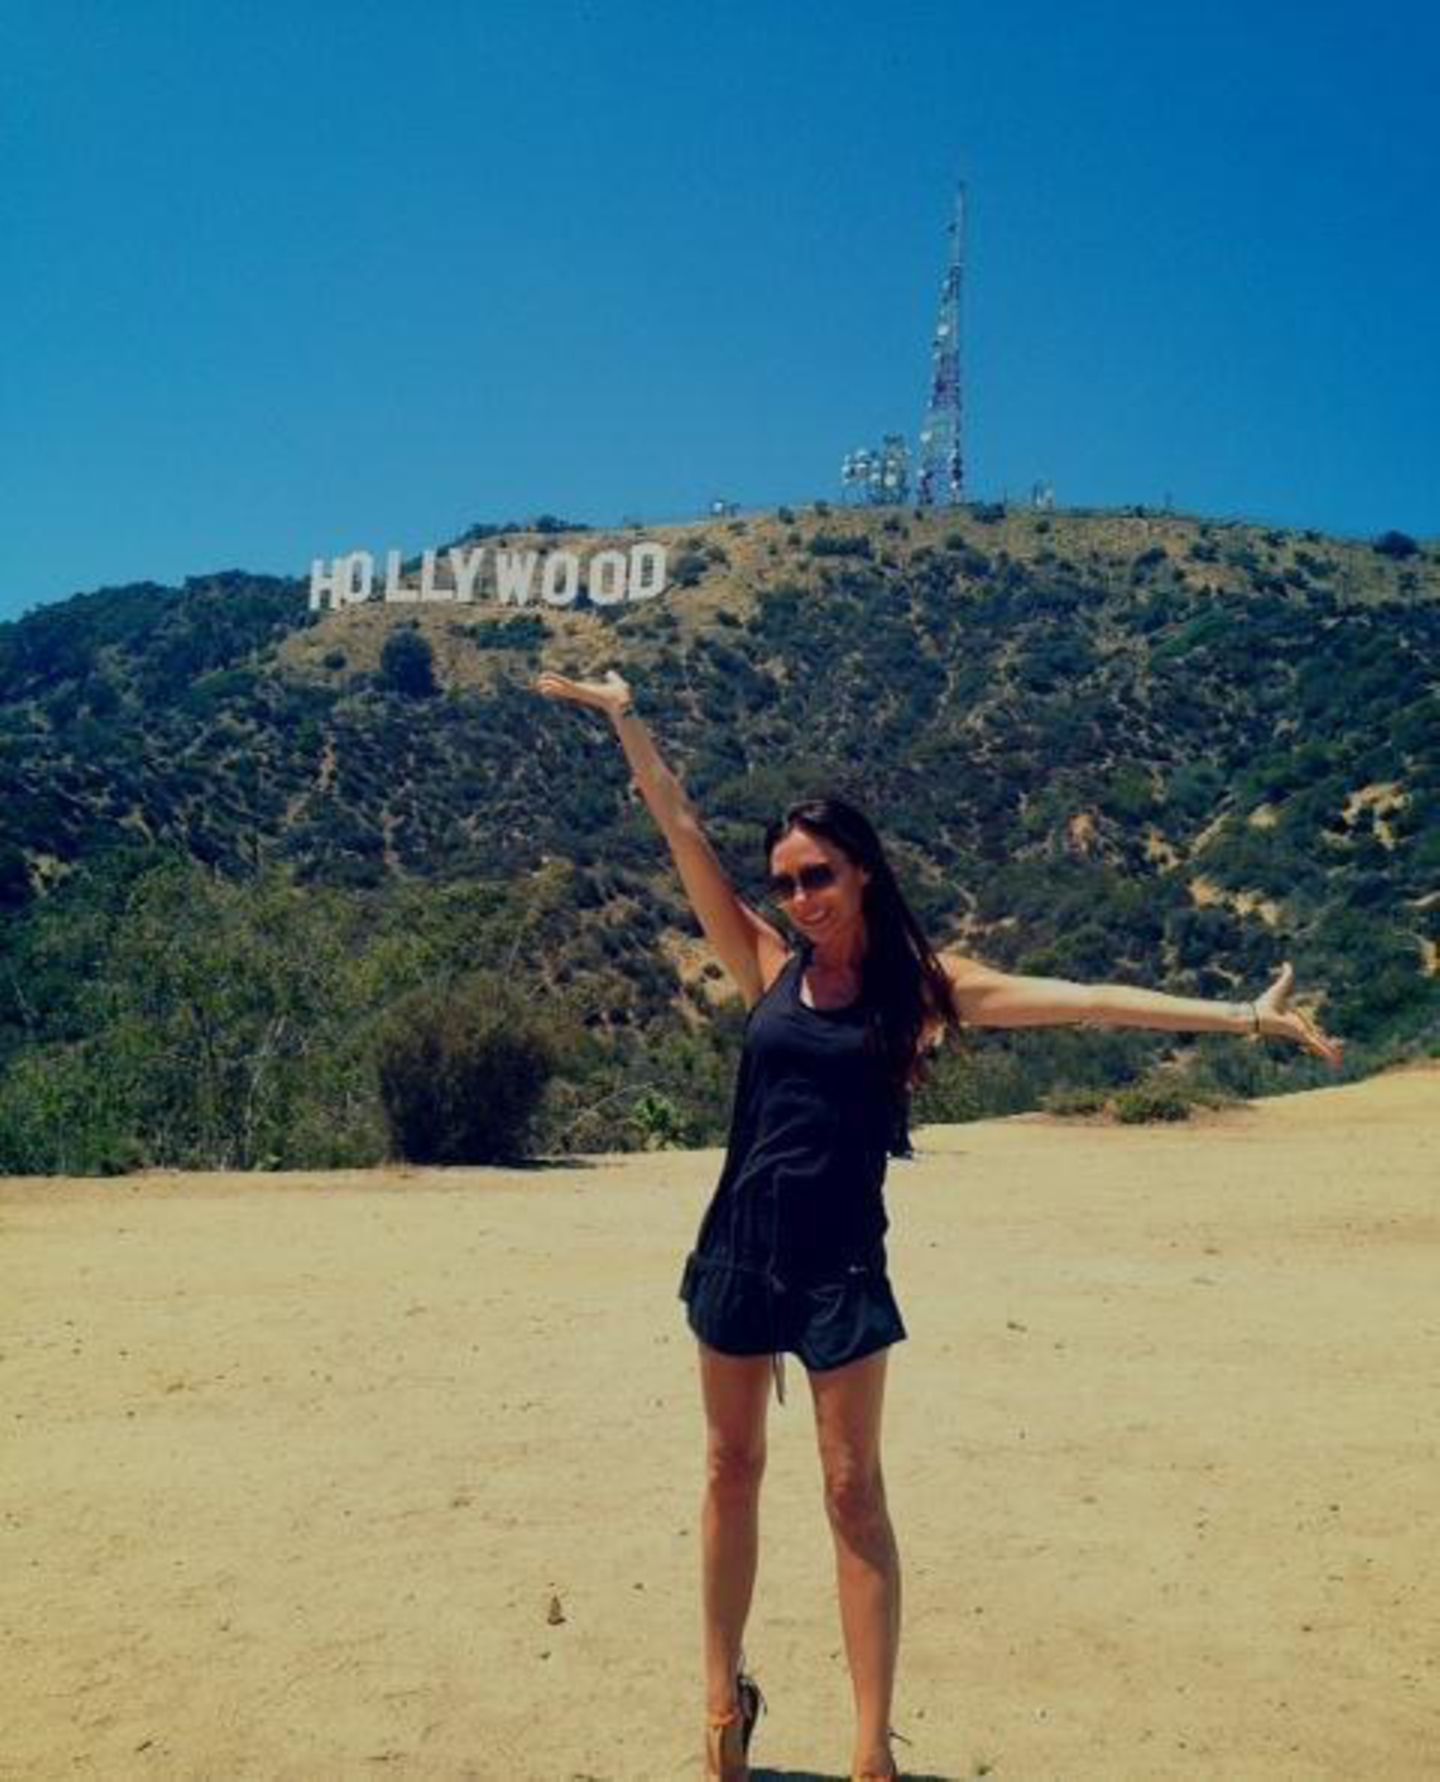 Ungewöhnlich glücklich zeigt sich Victoria Beckham vor dem Hollywood-Sign.